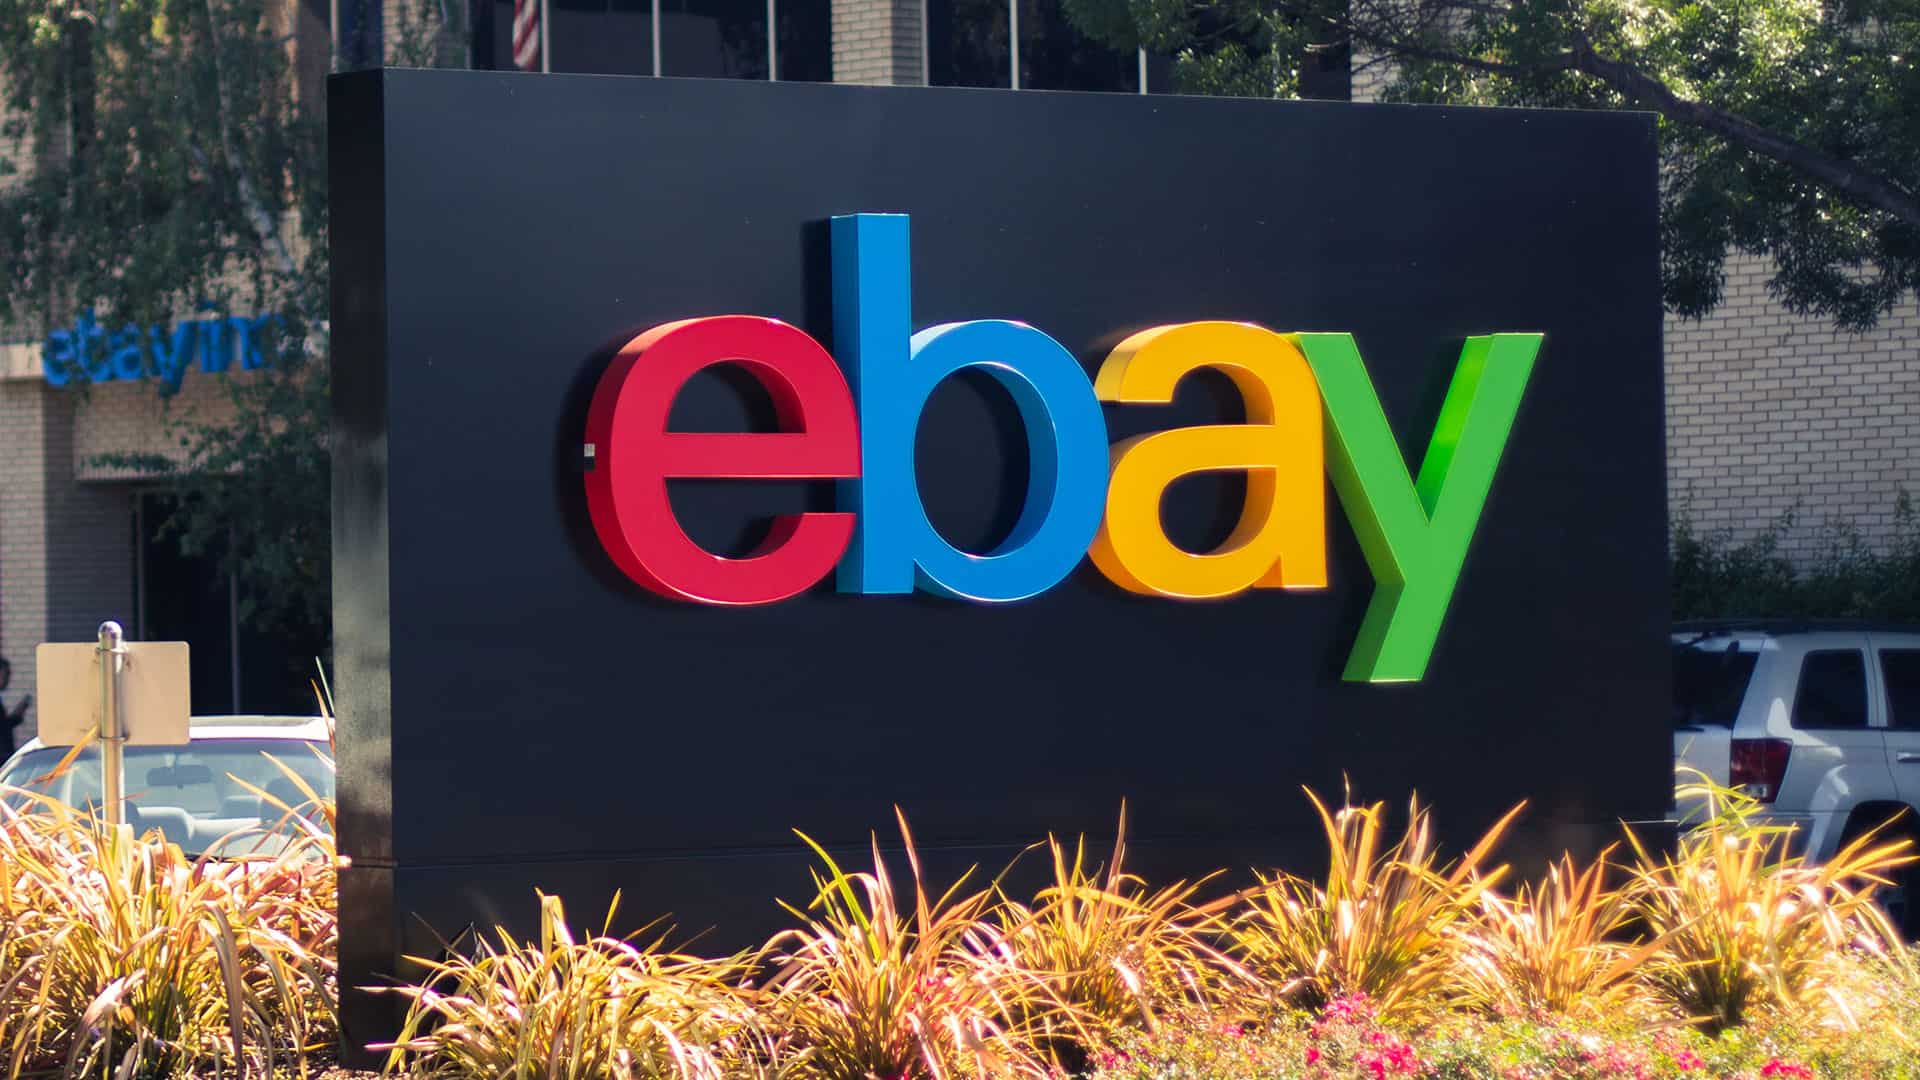 New UK head for eBay